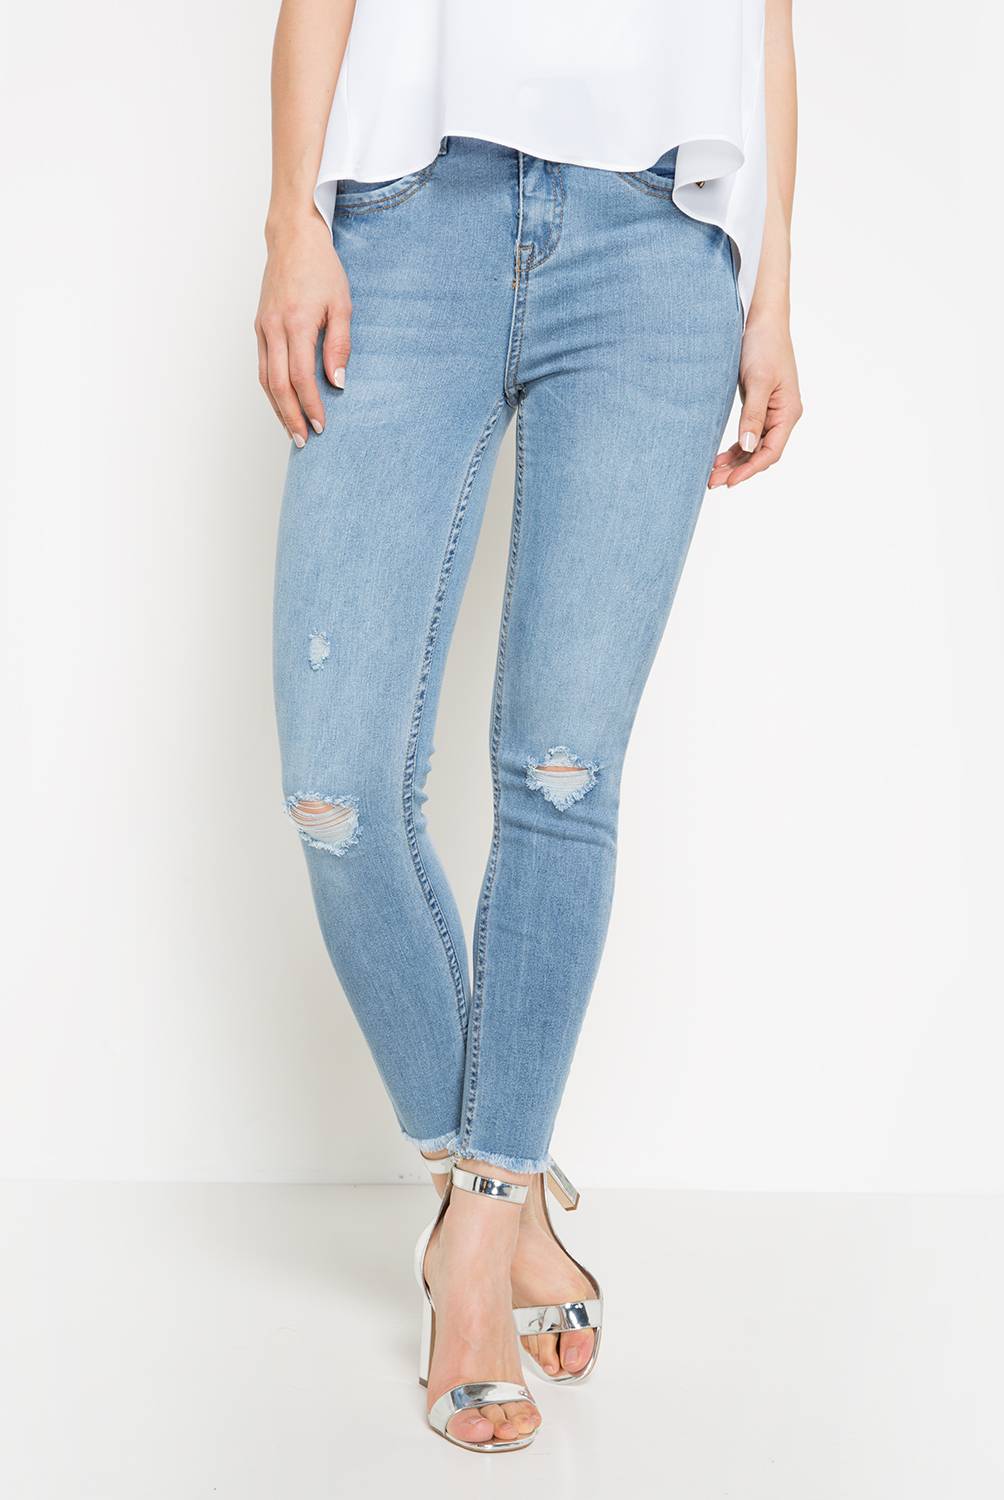 MOSSIMO - Jeans Mujer Skinny Tiro Alto Mossimo